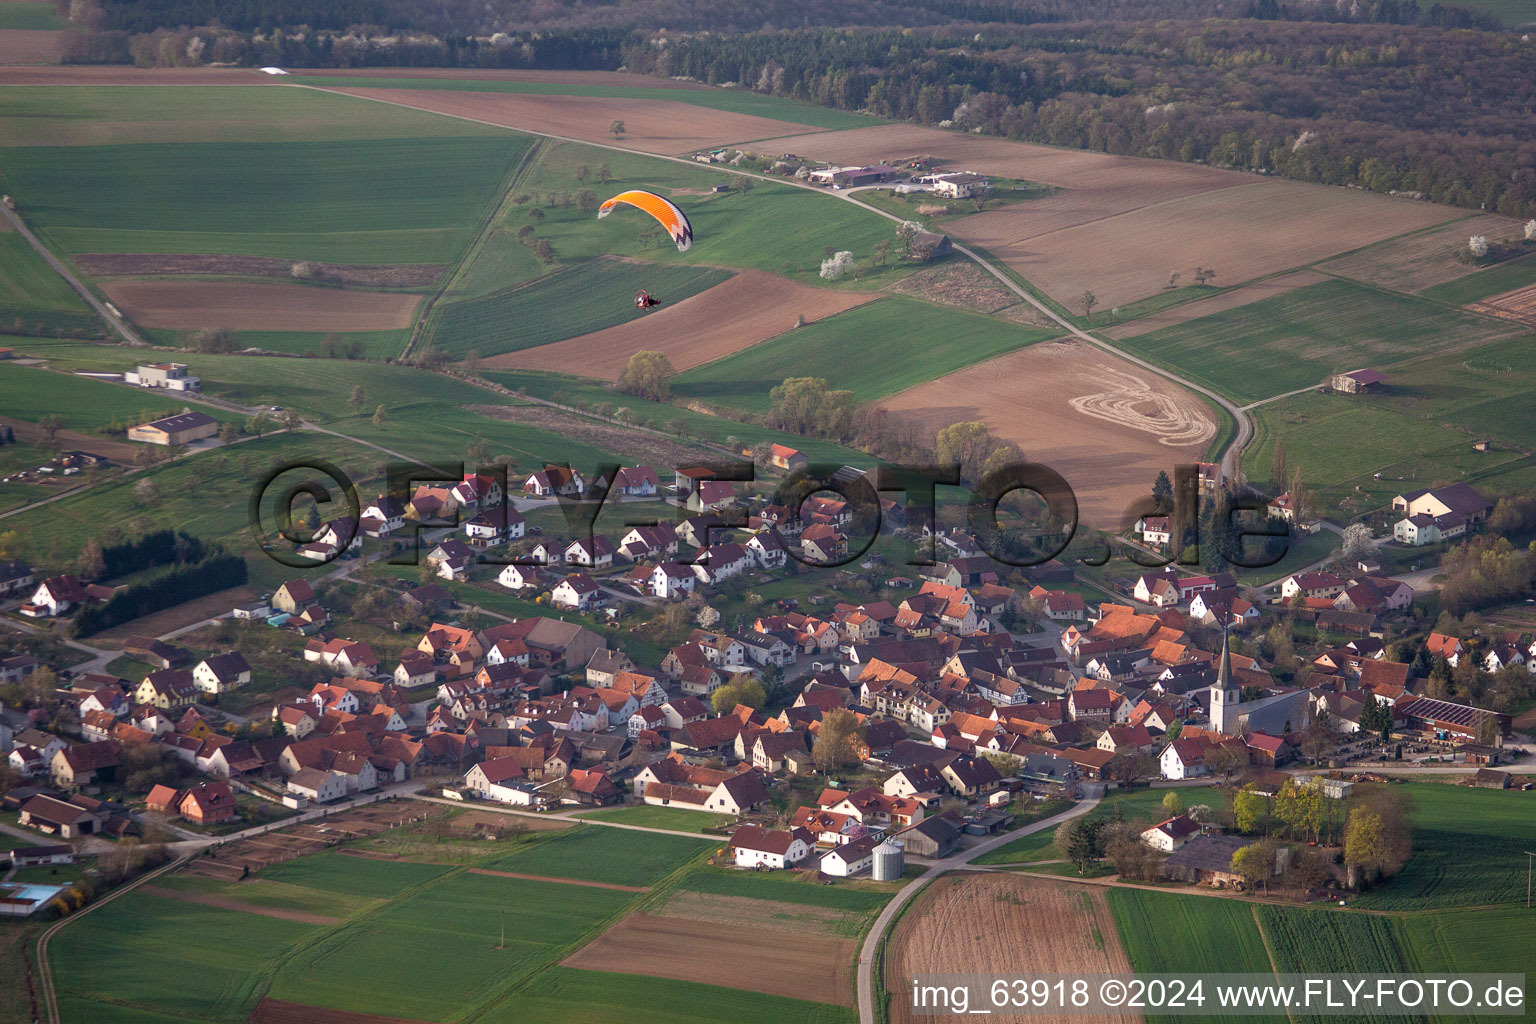 Vue aérienne de Champs agricoles et surfaces utilisables à Wargolshausen dans le département Bavière, Allemagne